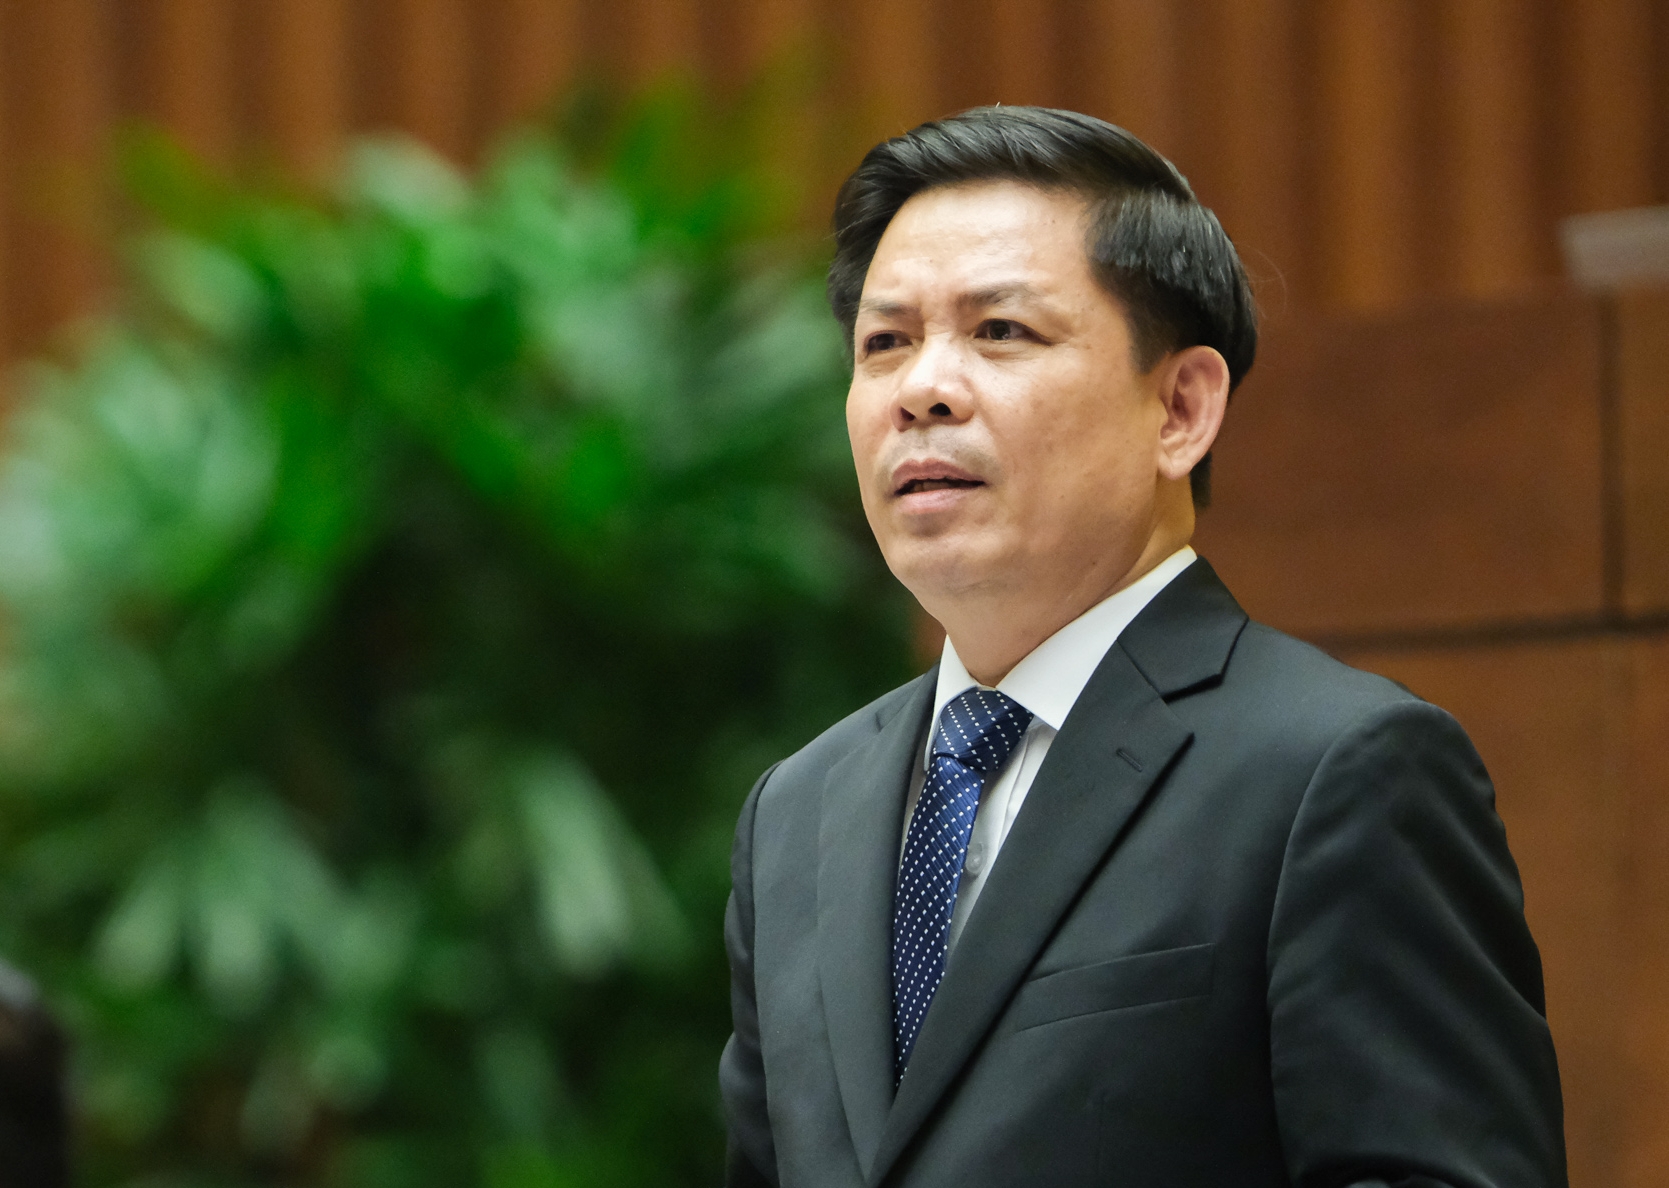 Lý do miễn nhiệm Bộ trưởng GTVT Nguyễn Văn Thể